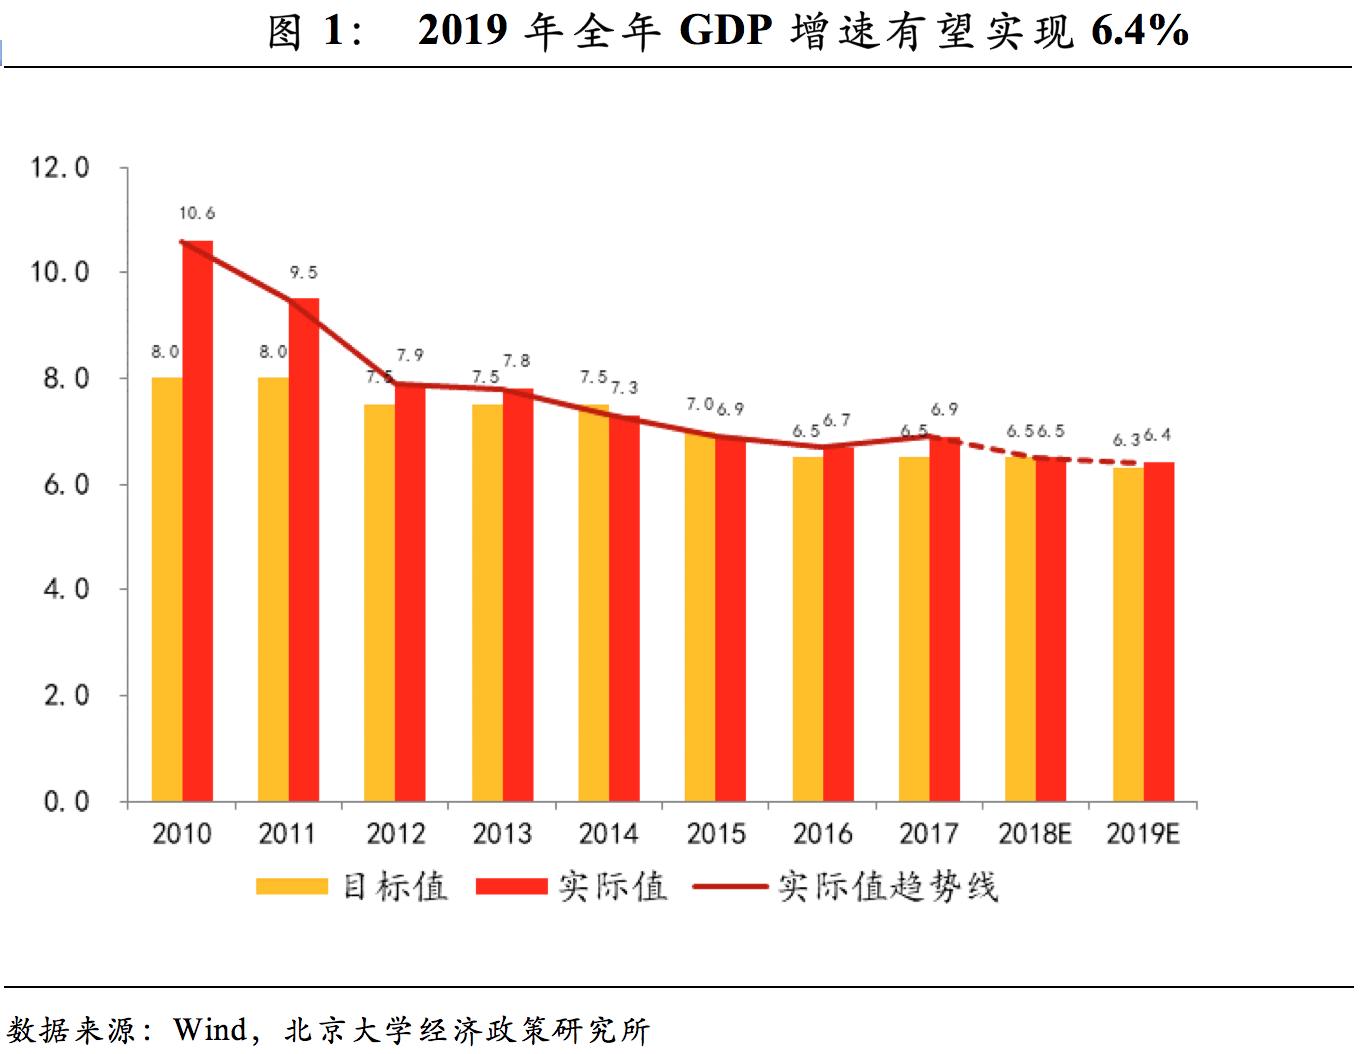 北大光华报告:2019年中国人均gdp将超一万美元